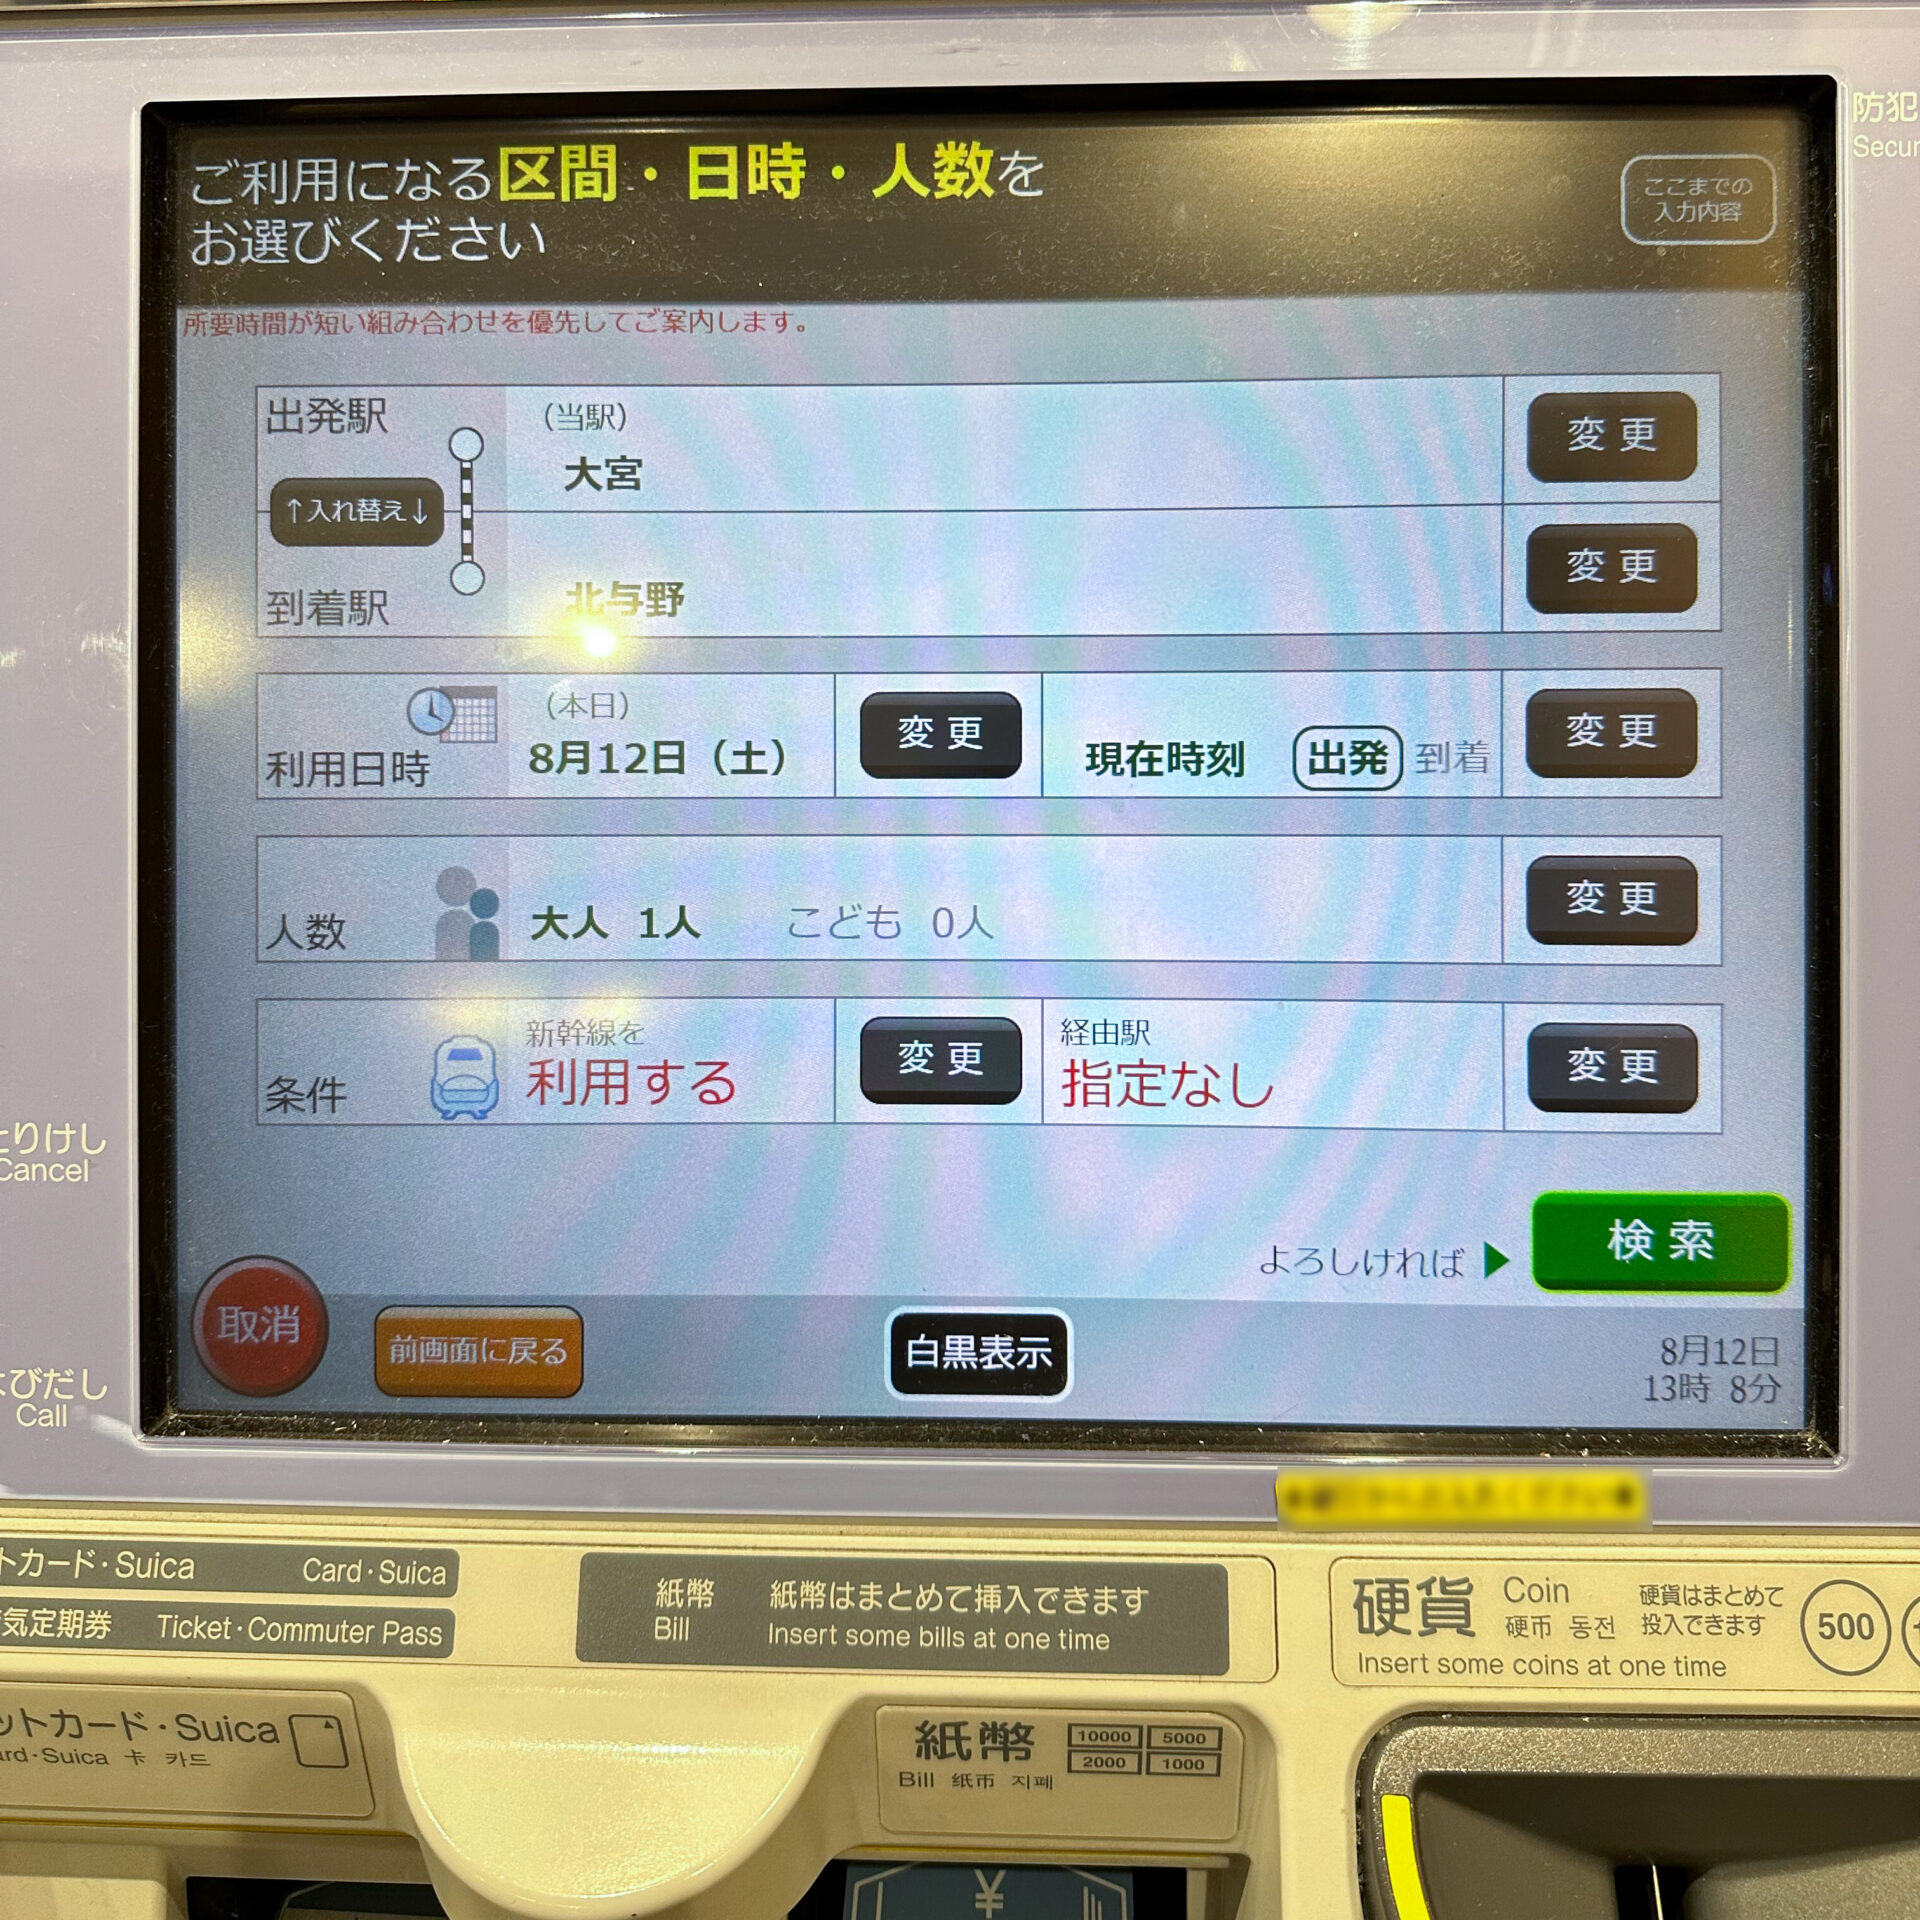 JR東日本指定席券売機操作画面